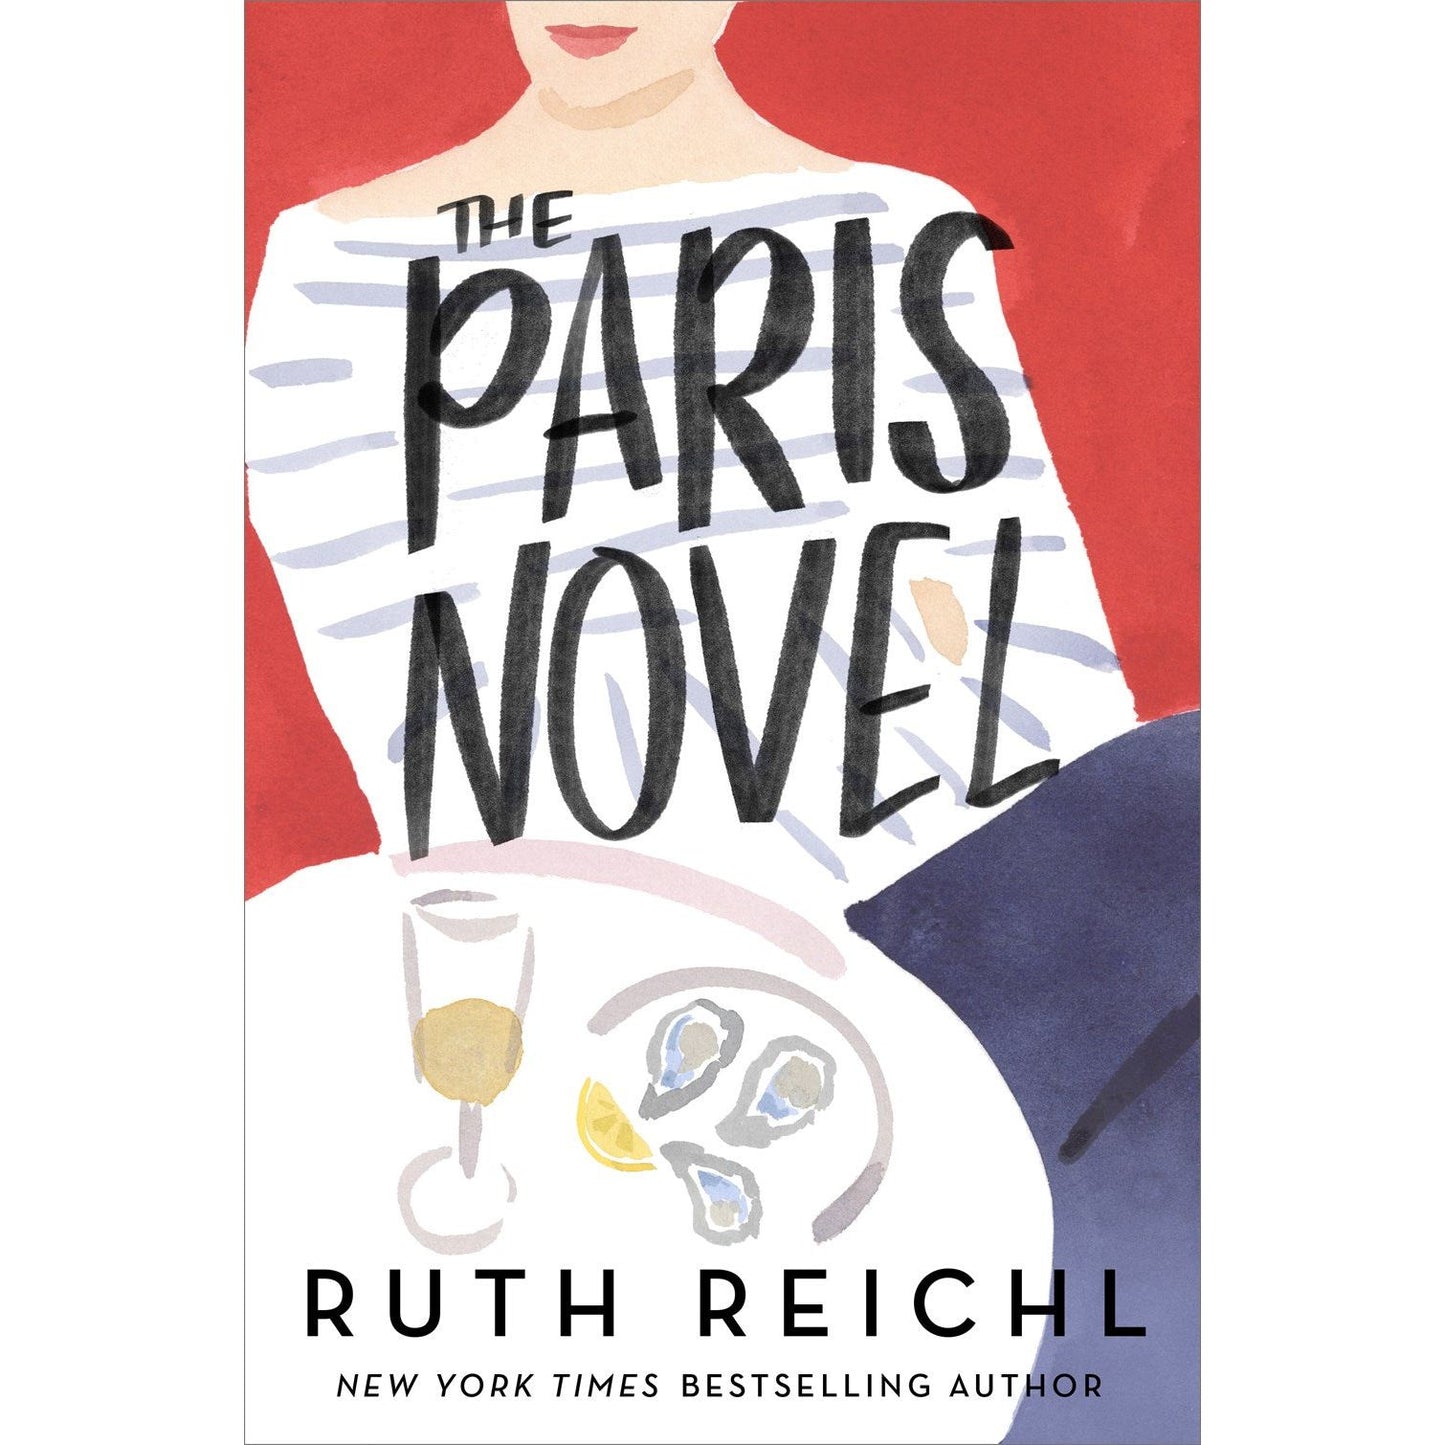 PREORDER: The Paris Novel (Ruth Reichl)